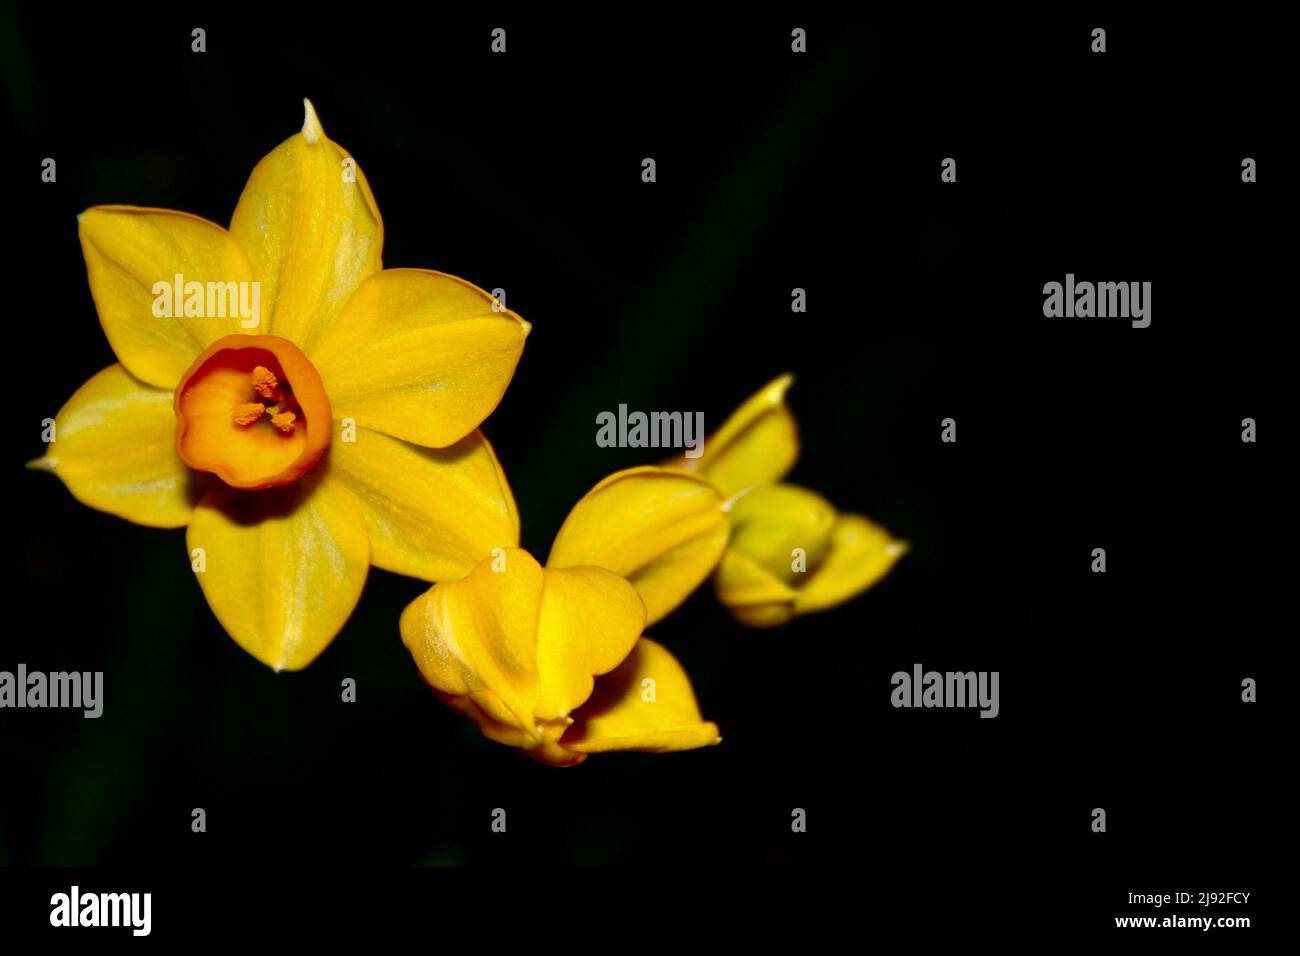 Jonquil yellow flower Stock Photo